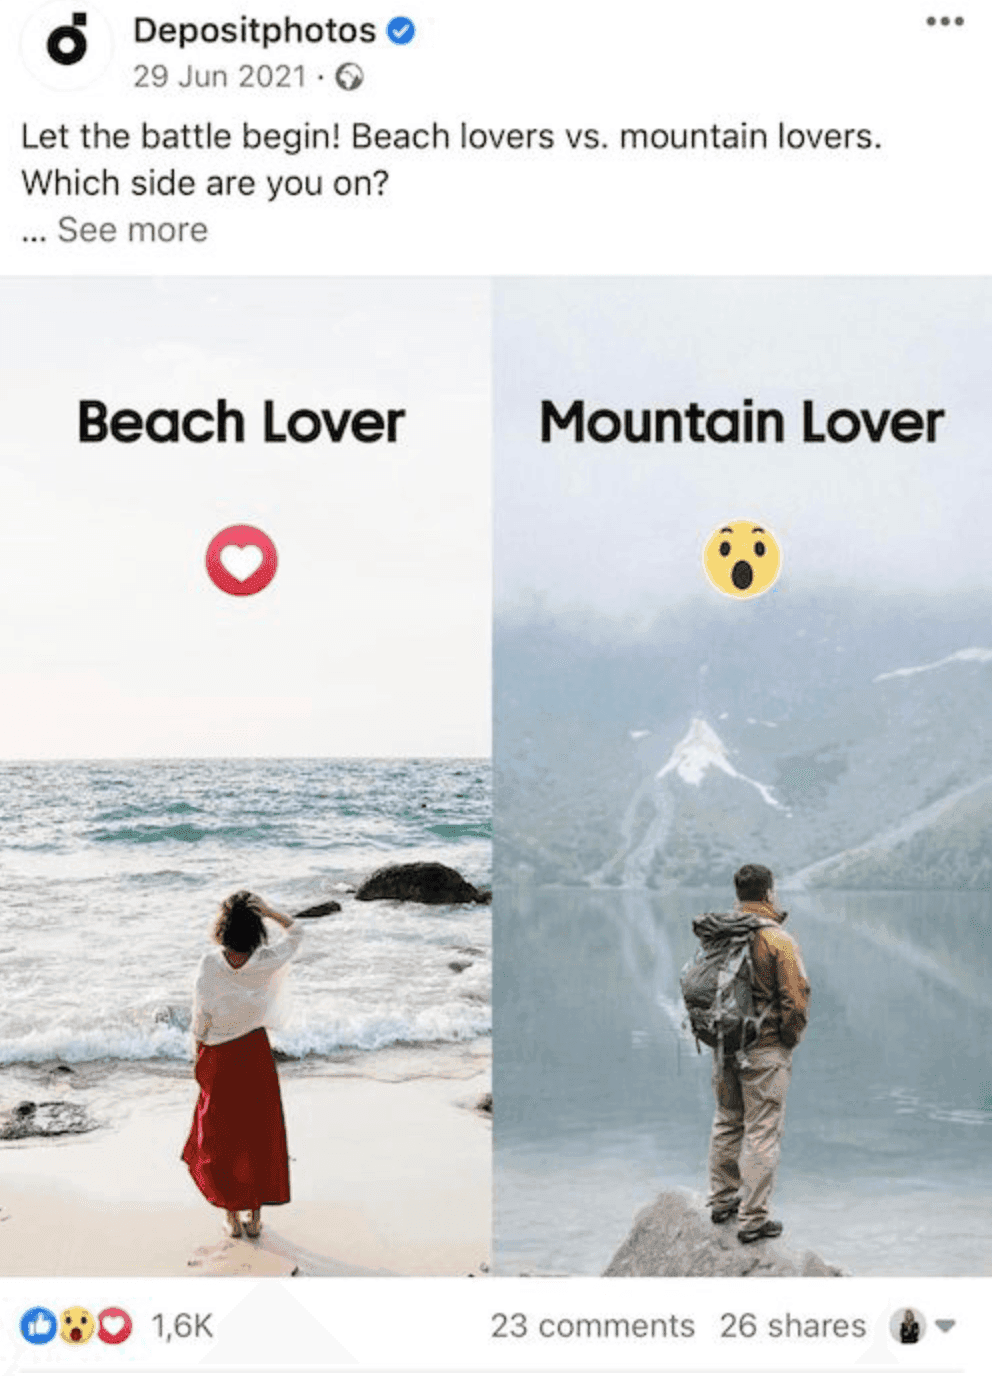 Depositphotos engaging beach or mountain lover Facebook post